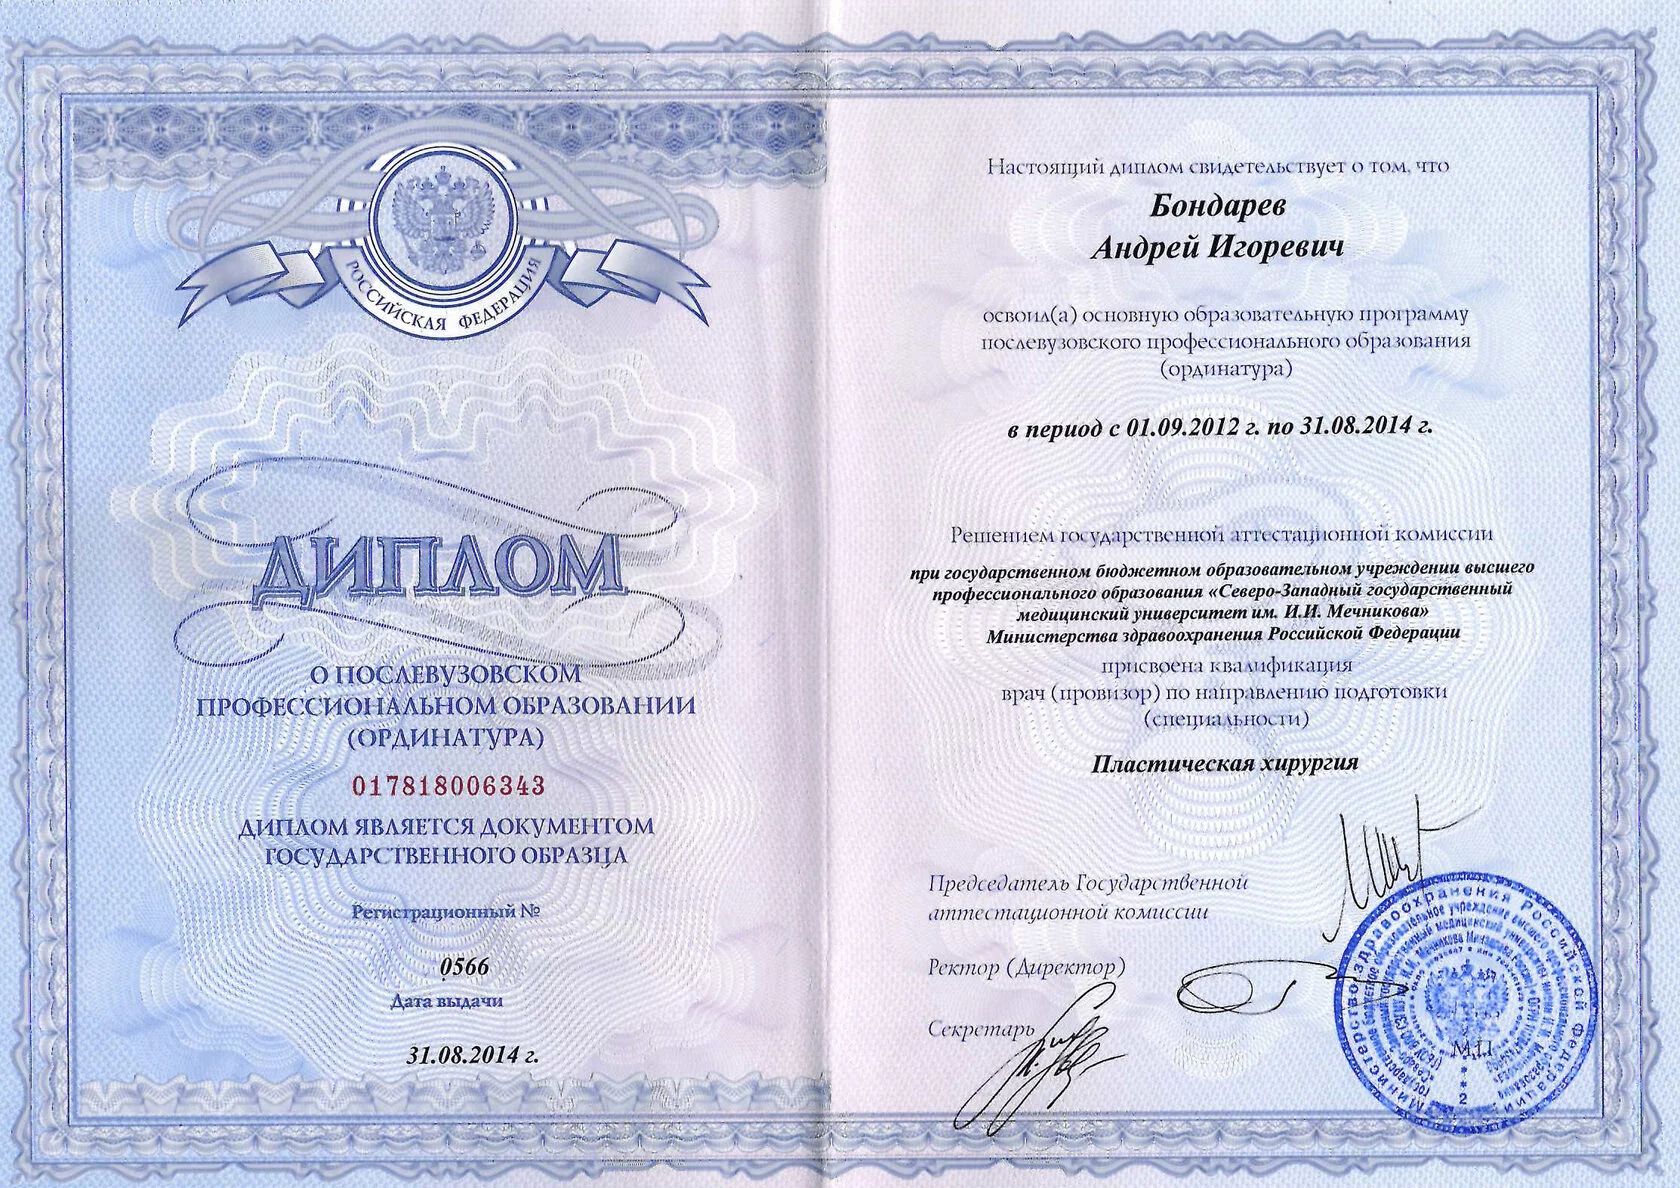 Контакты Евромеда в Омске: телефон регистратуры и адреса